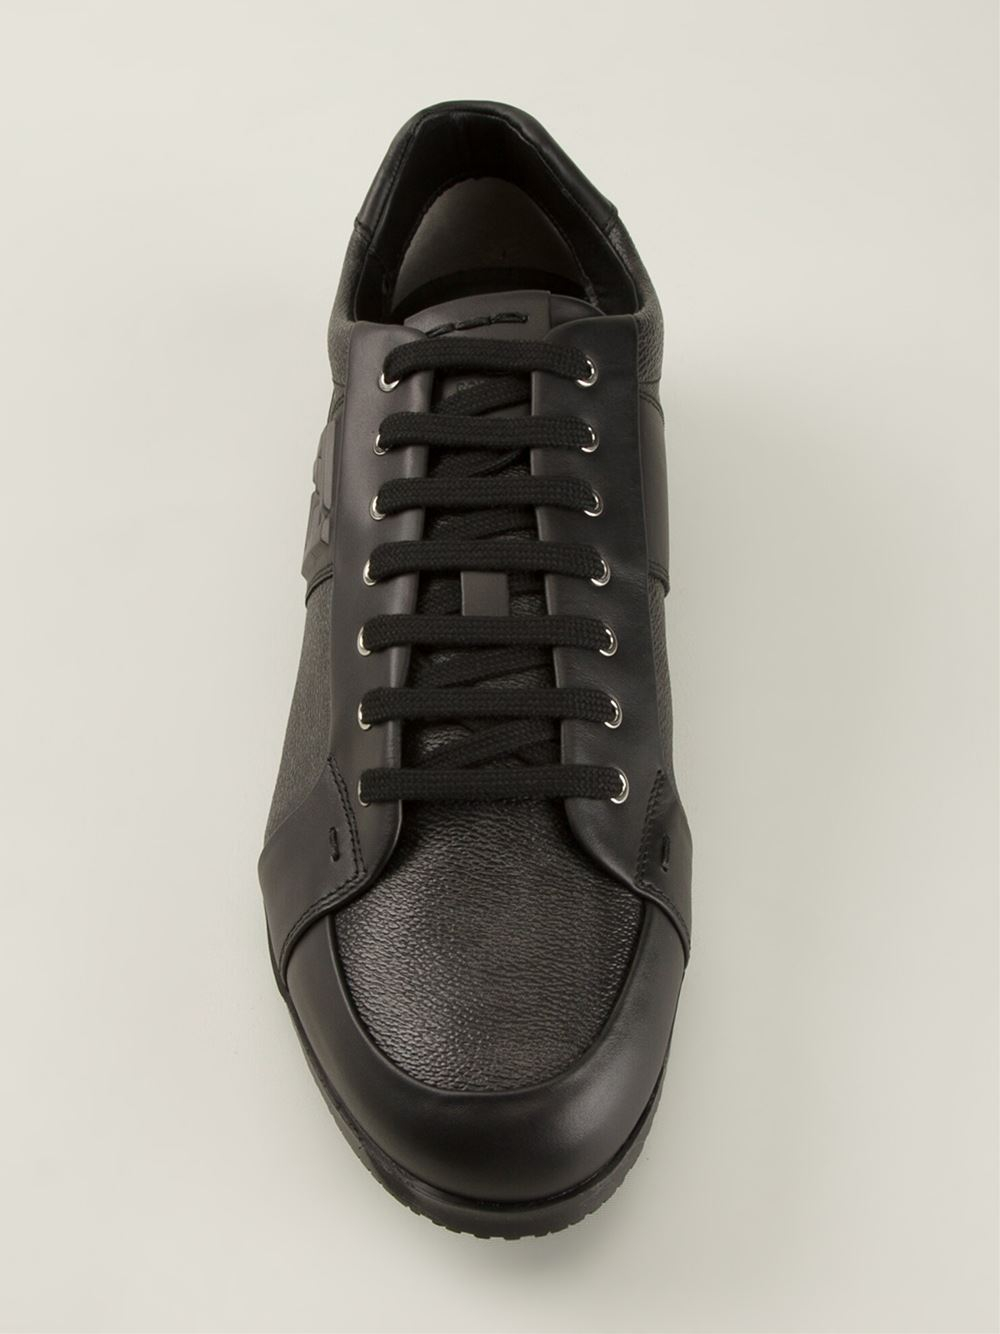 Lyst - Fendi Ff Logo Sneakers in Black for Men